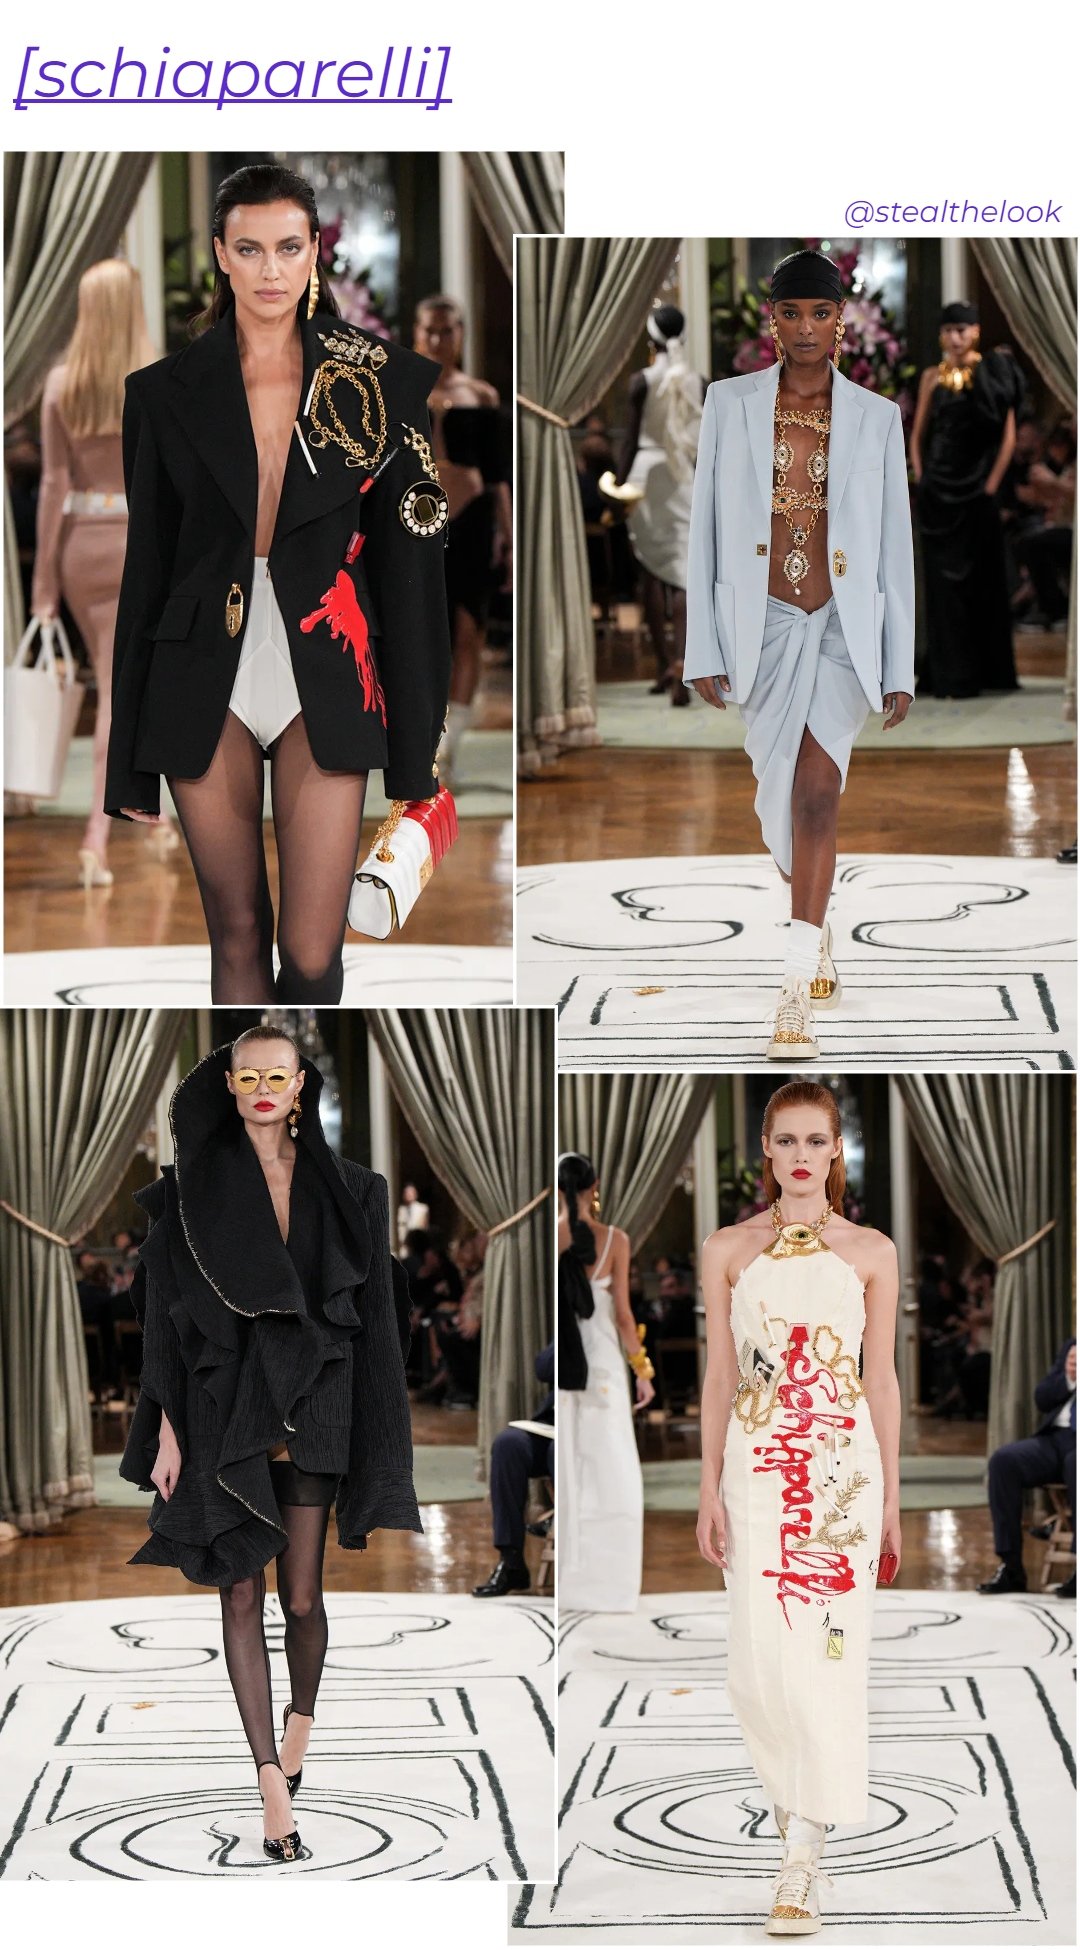 Schiaparelli - roupas diversas - Paris Fashion Week - verão - colagem de imagens - https://stealthelook.com.br